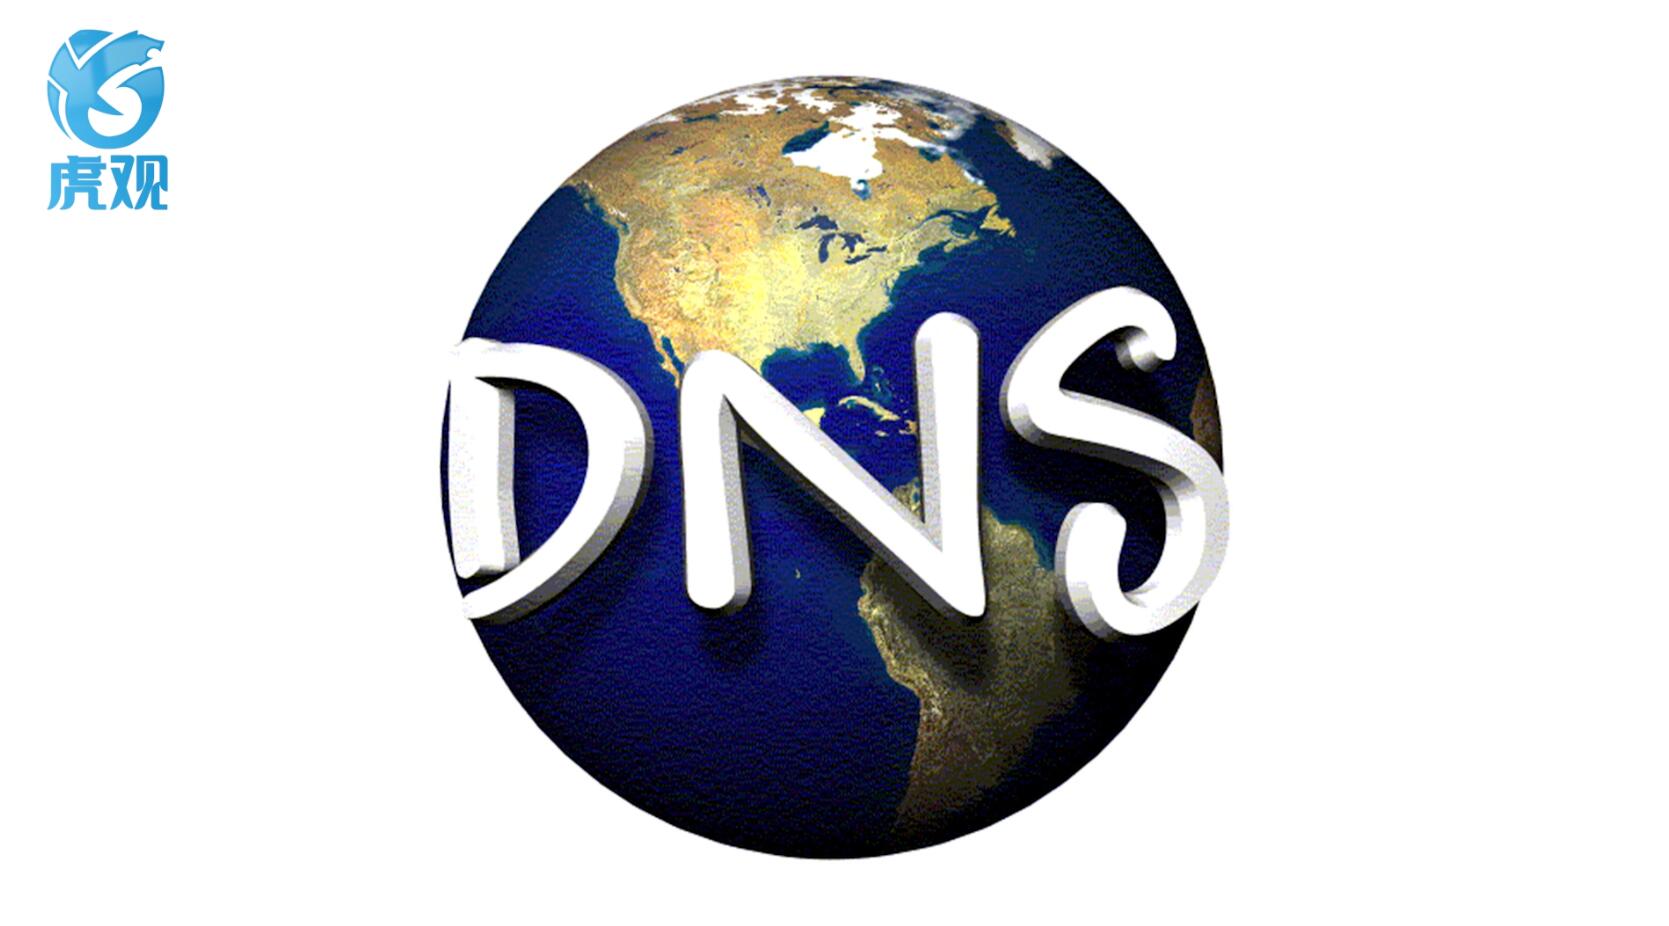 dns服务器是什么